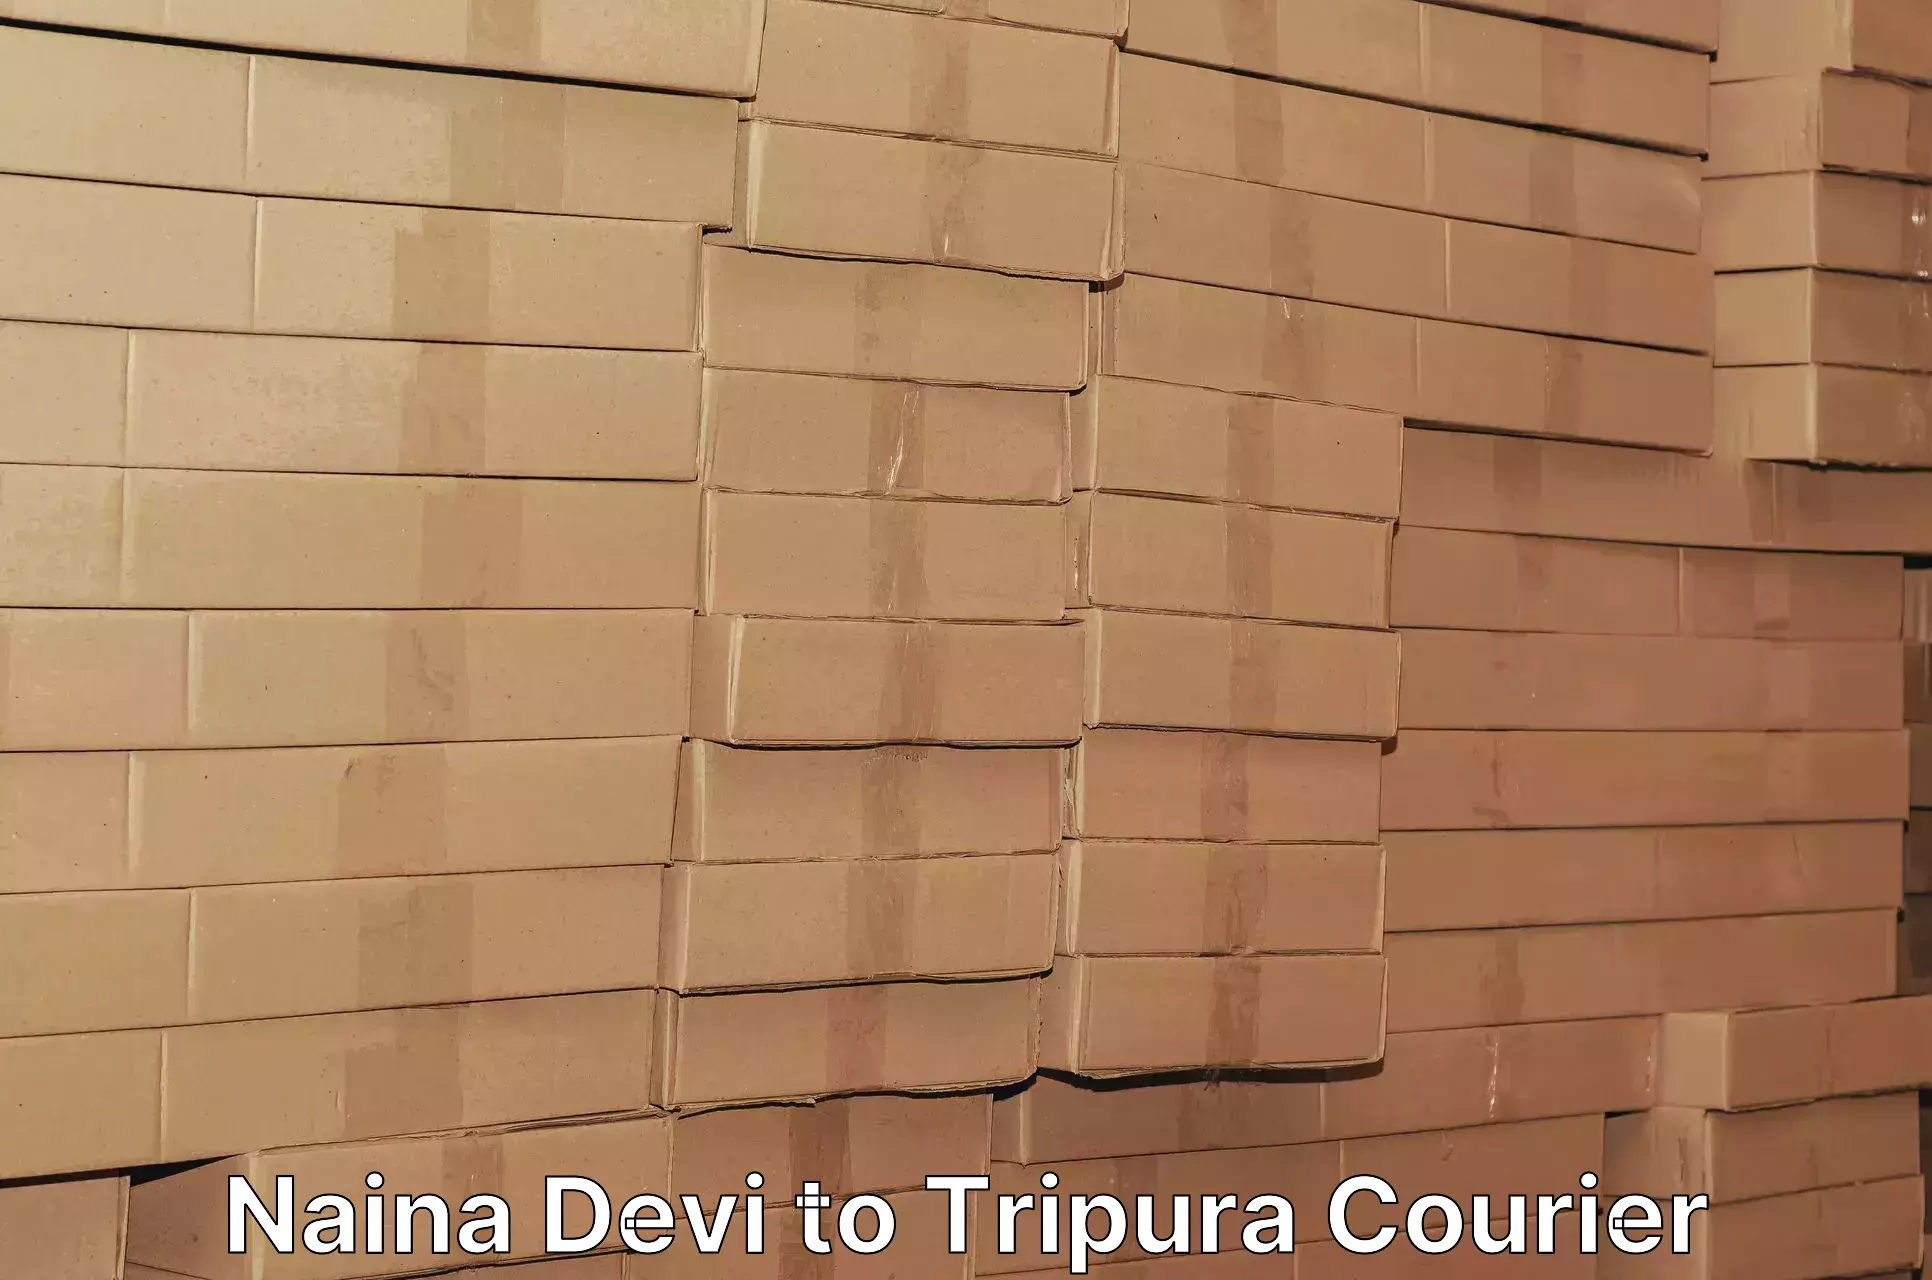 Next-day freight services Naina Devi to South Tripura